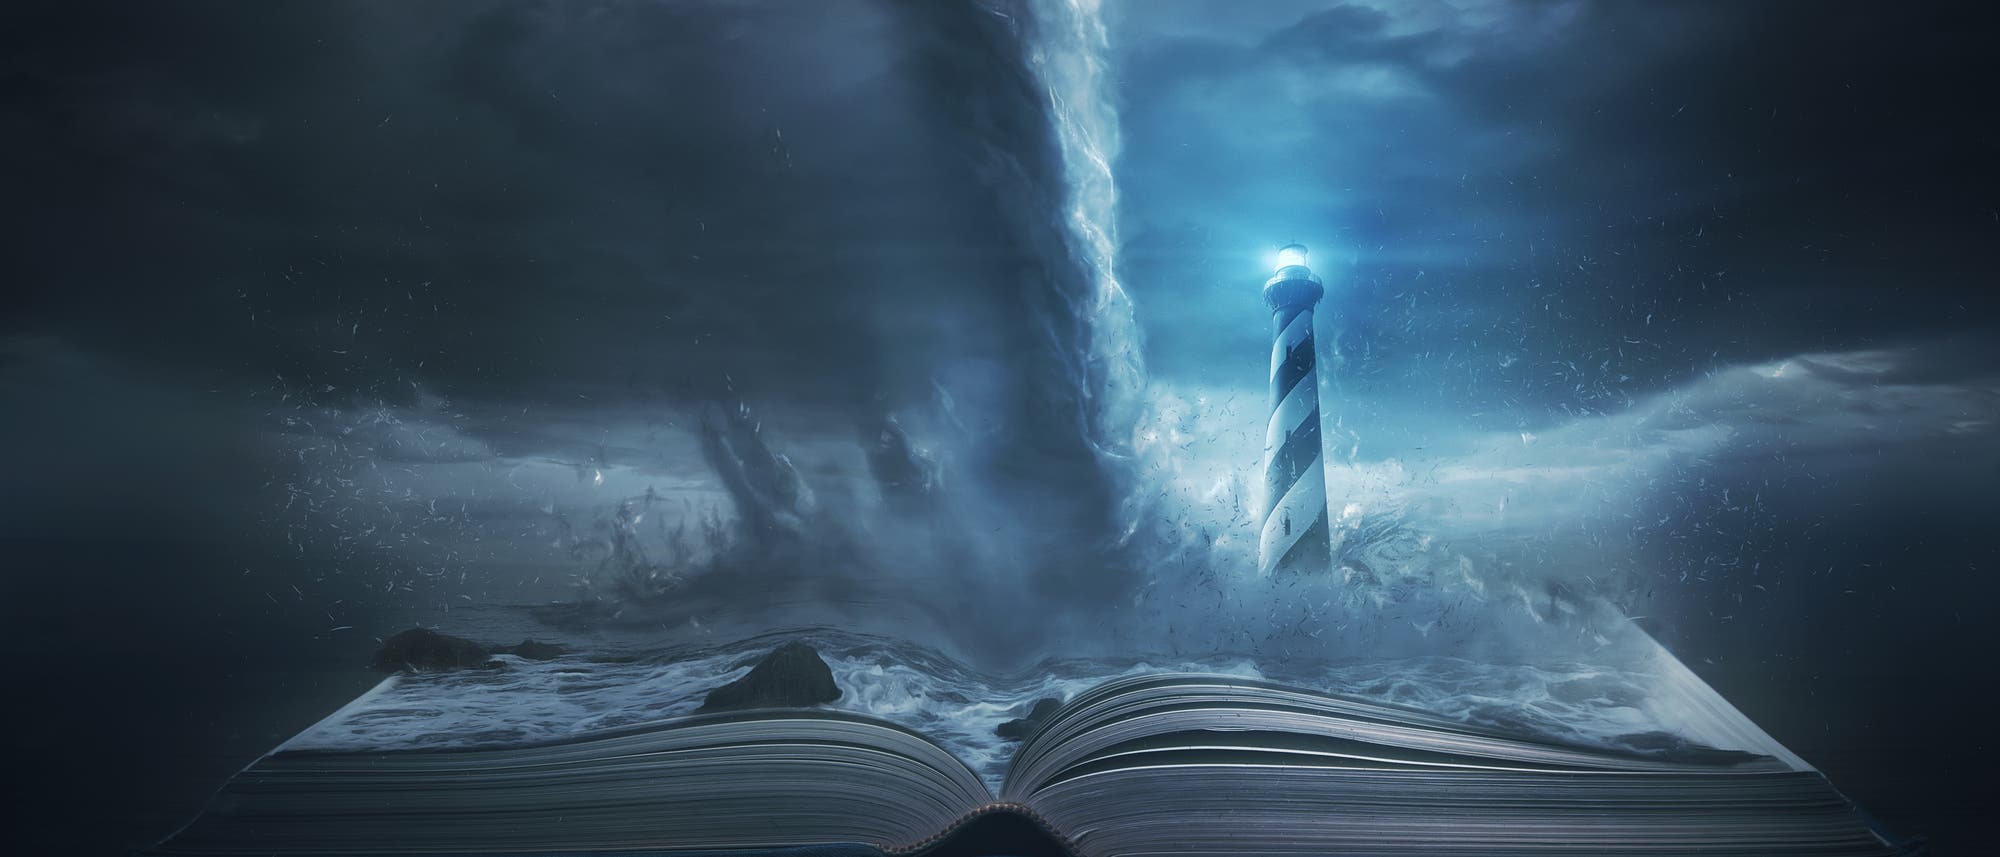 Ein Buch, auf dessen aufgeschlagenen Seiten ein Tornado neben einem Leuchtturm tobt